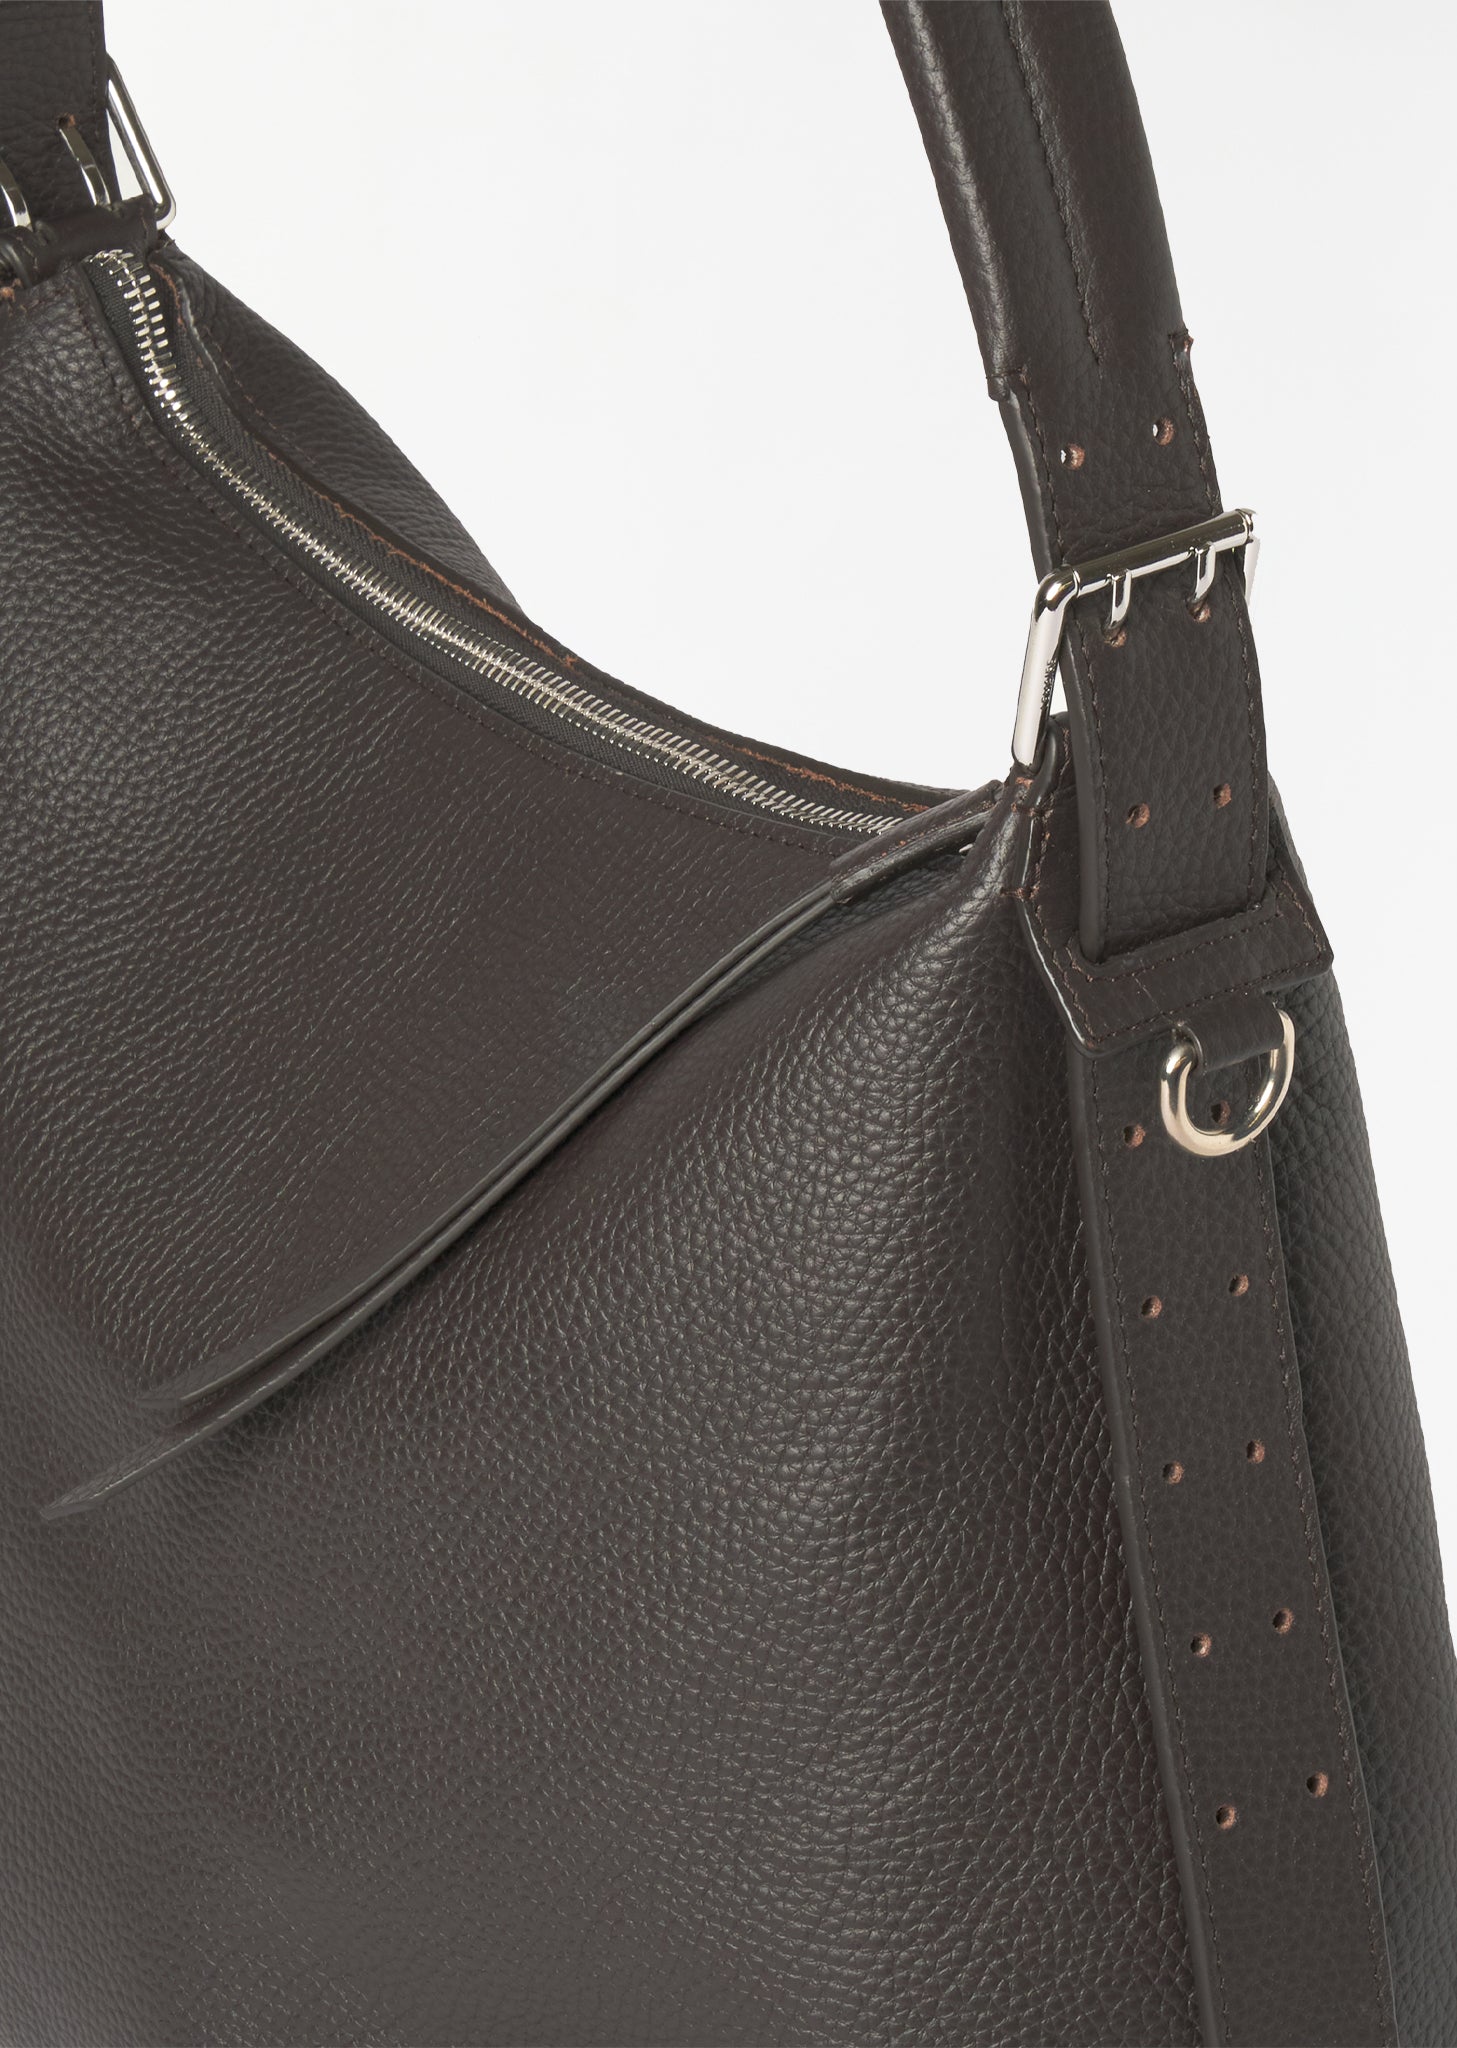 Lemaire Belt Leather Shoulder Bag in Natural